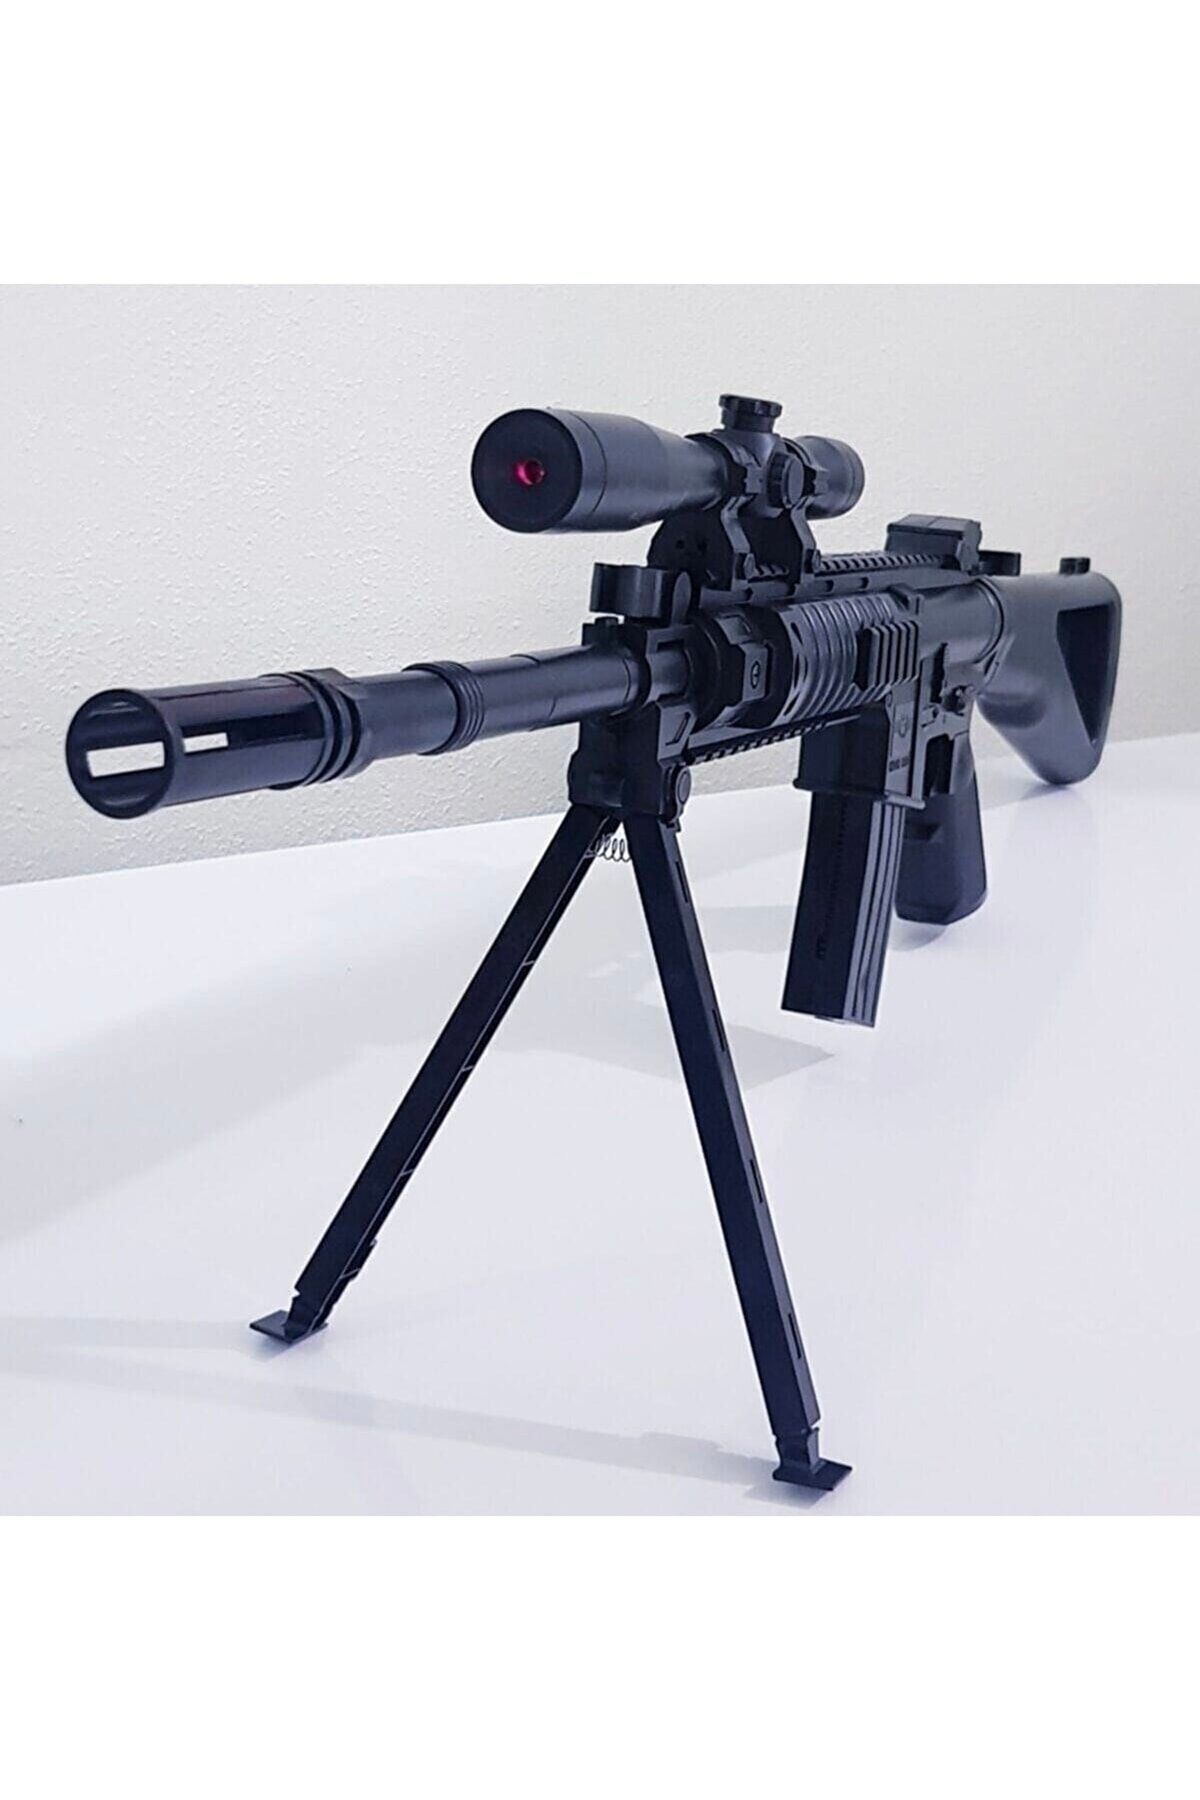 Mia Boncuklu Lazerli Keskin Nişancı Tüfeği Oyuncak Dürbünlü Kanas Silah Beş Paket Boncuk Hediyeli